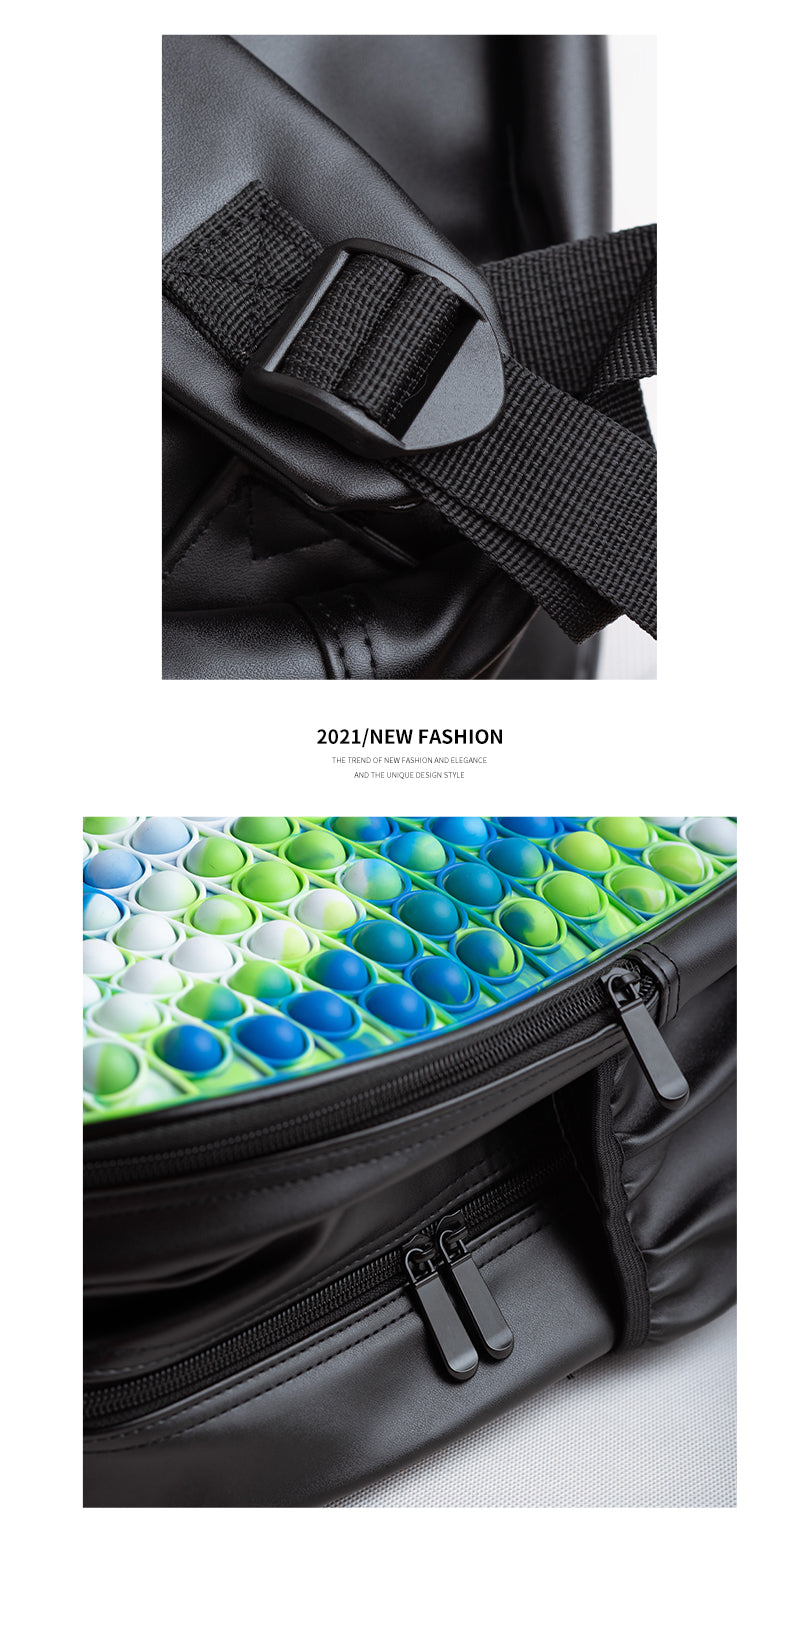 Push Bubble Back Pack Bag Pop Fidget Sensory Toy Stress Reliver (13 Designs) 16 Inch